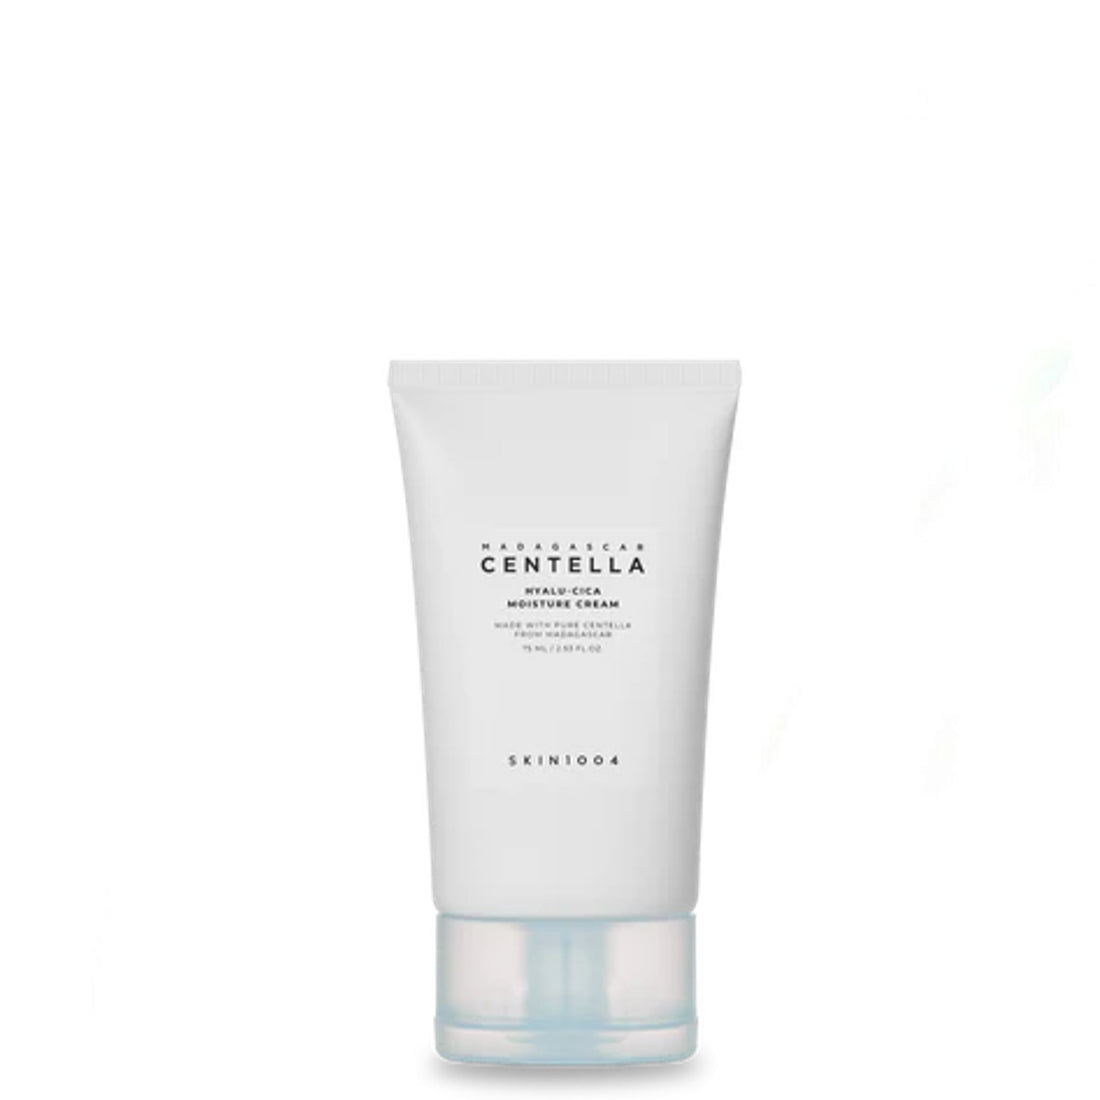 Skin1004 Centella Hyalu-Cica Moisture Cream 75 ml